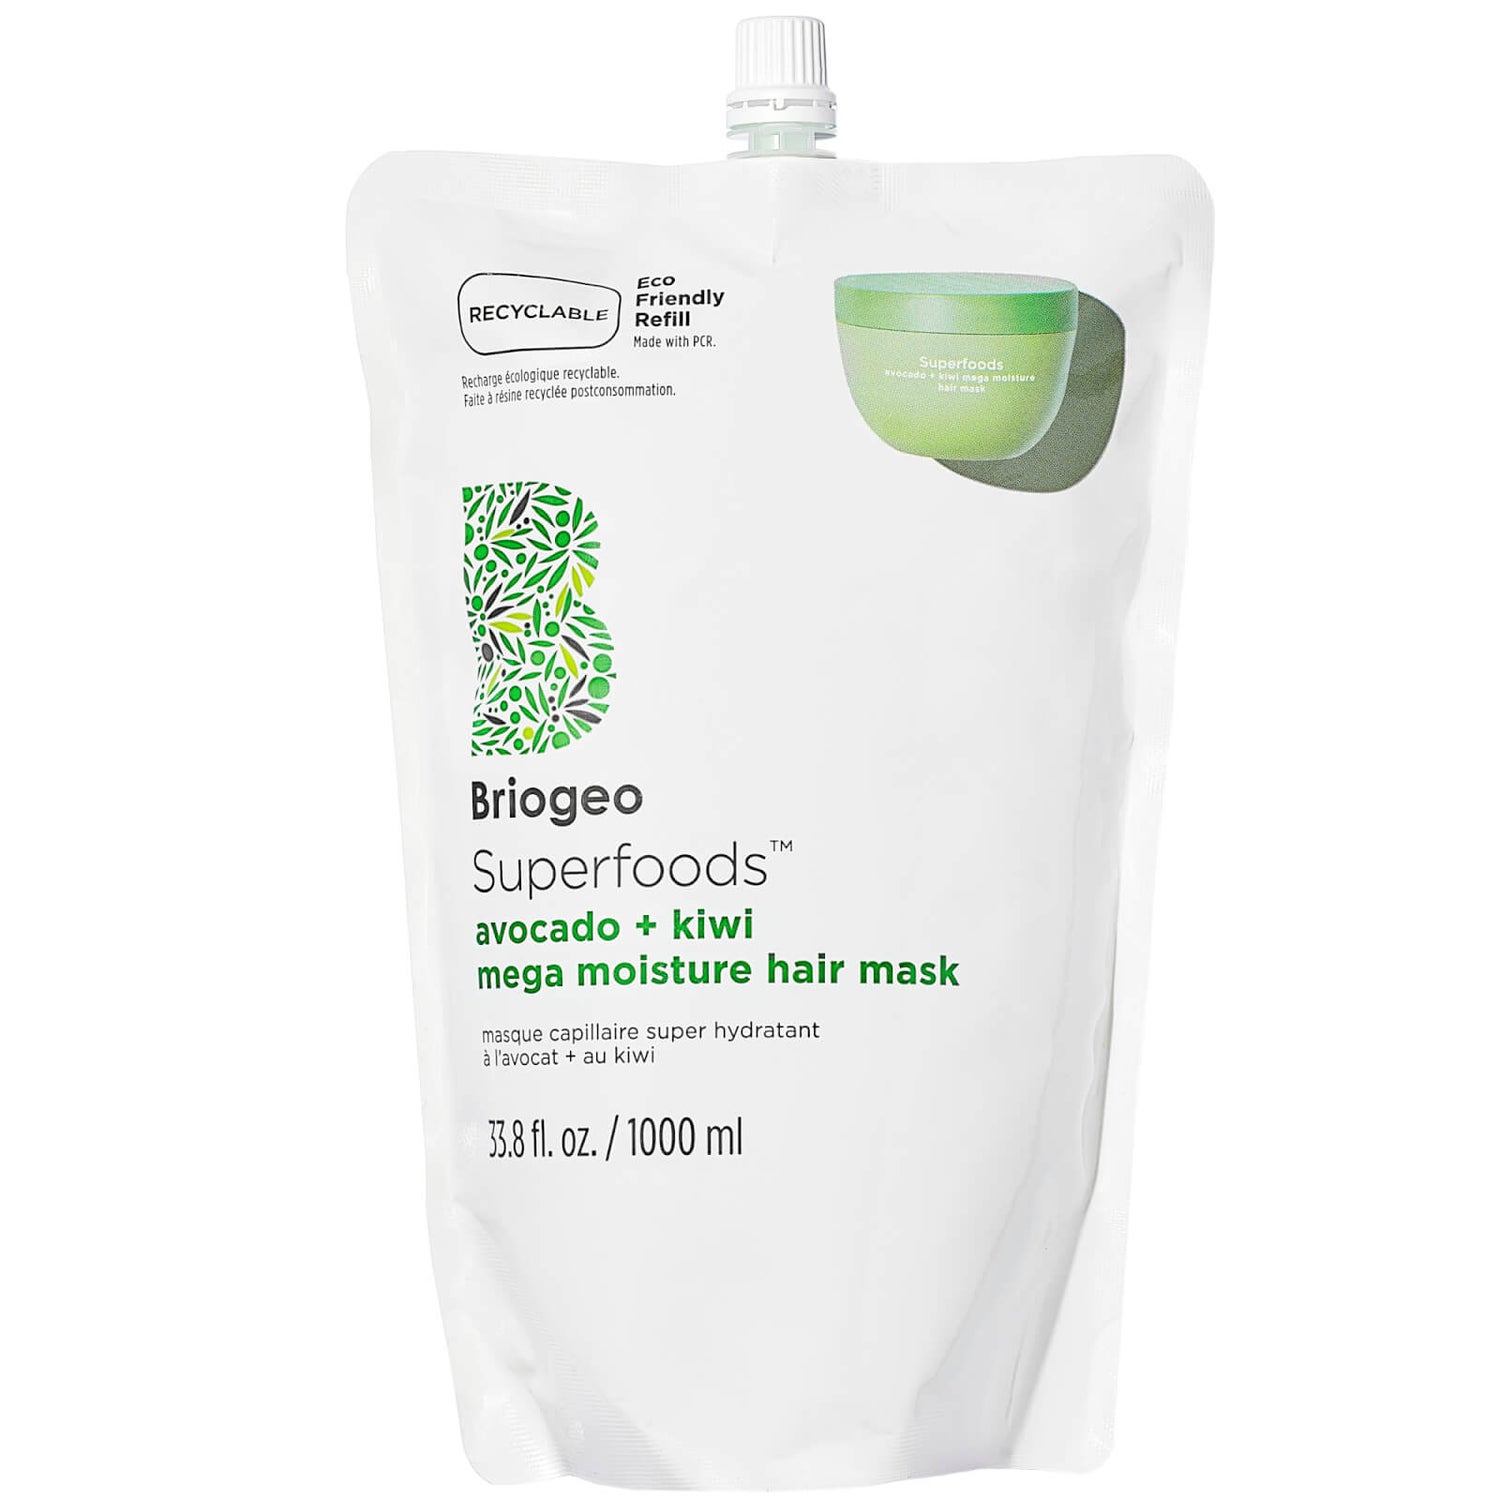 Briogeo Superfoods™ Avocado + Kiwi Mega Moisture Hair Mask 33.8 oz